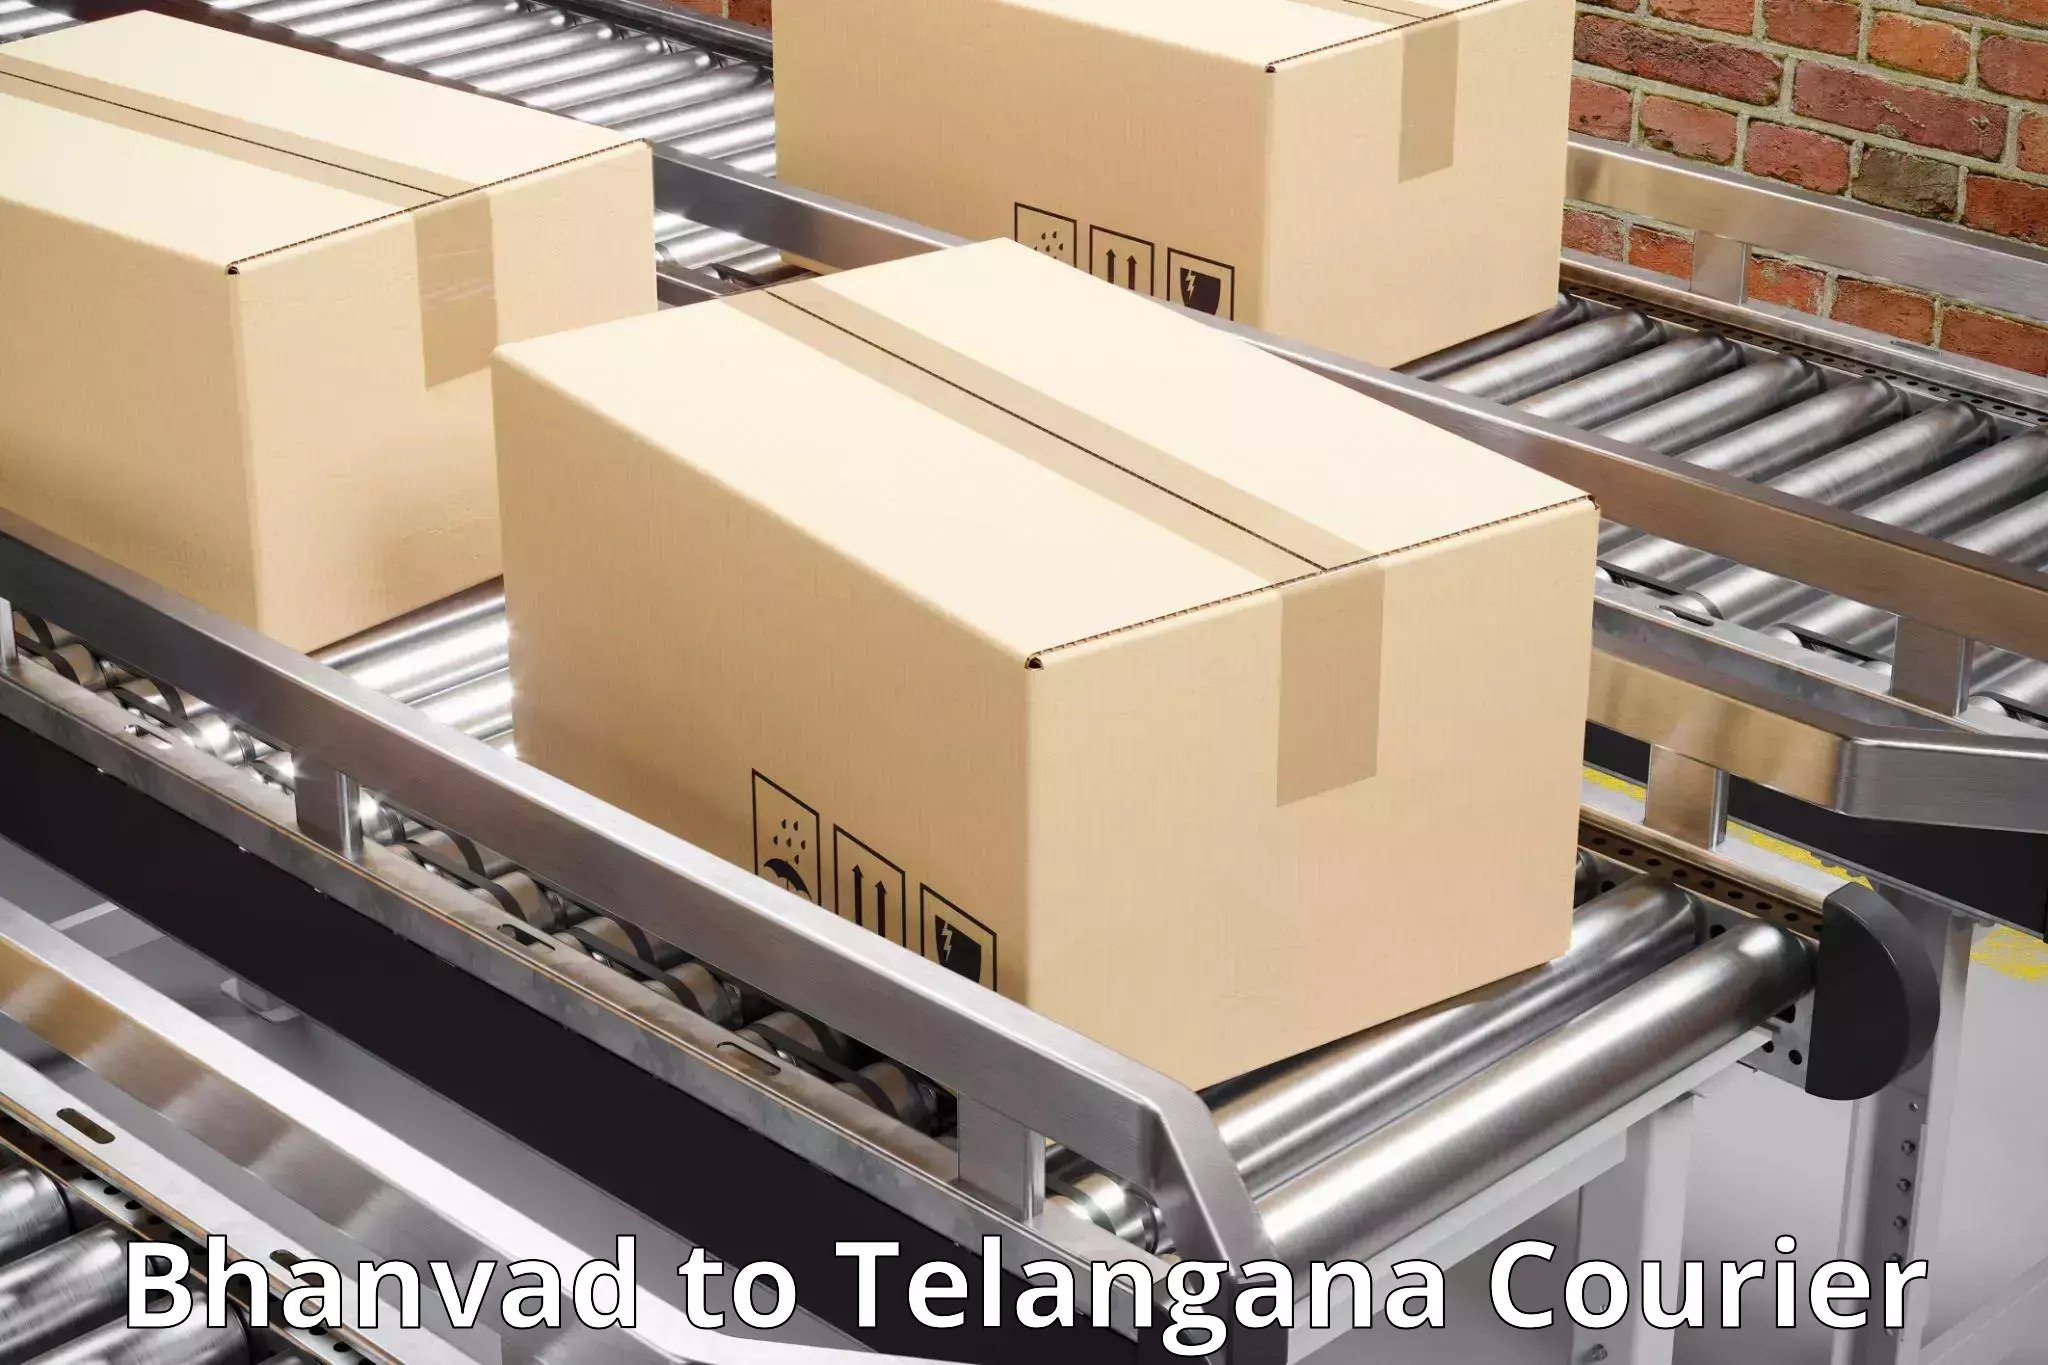 E-commerce fulfillment Bhanvad to Tadvai